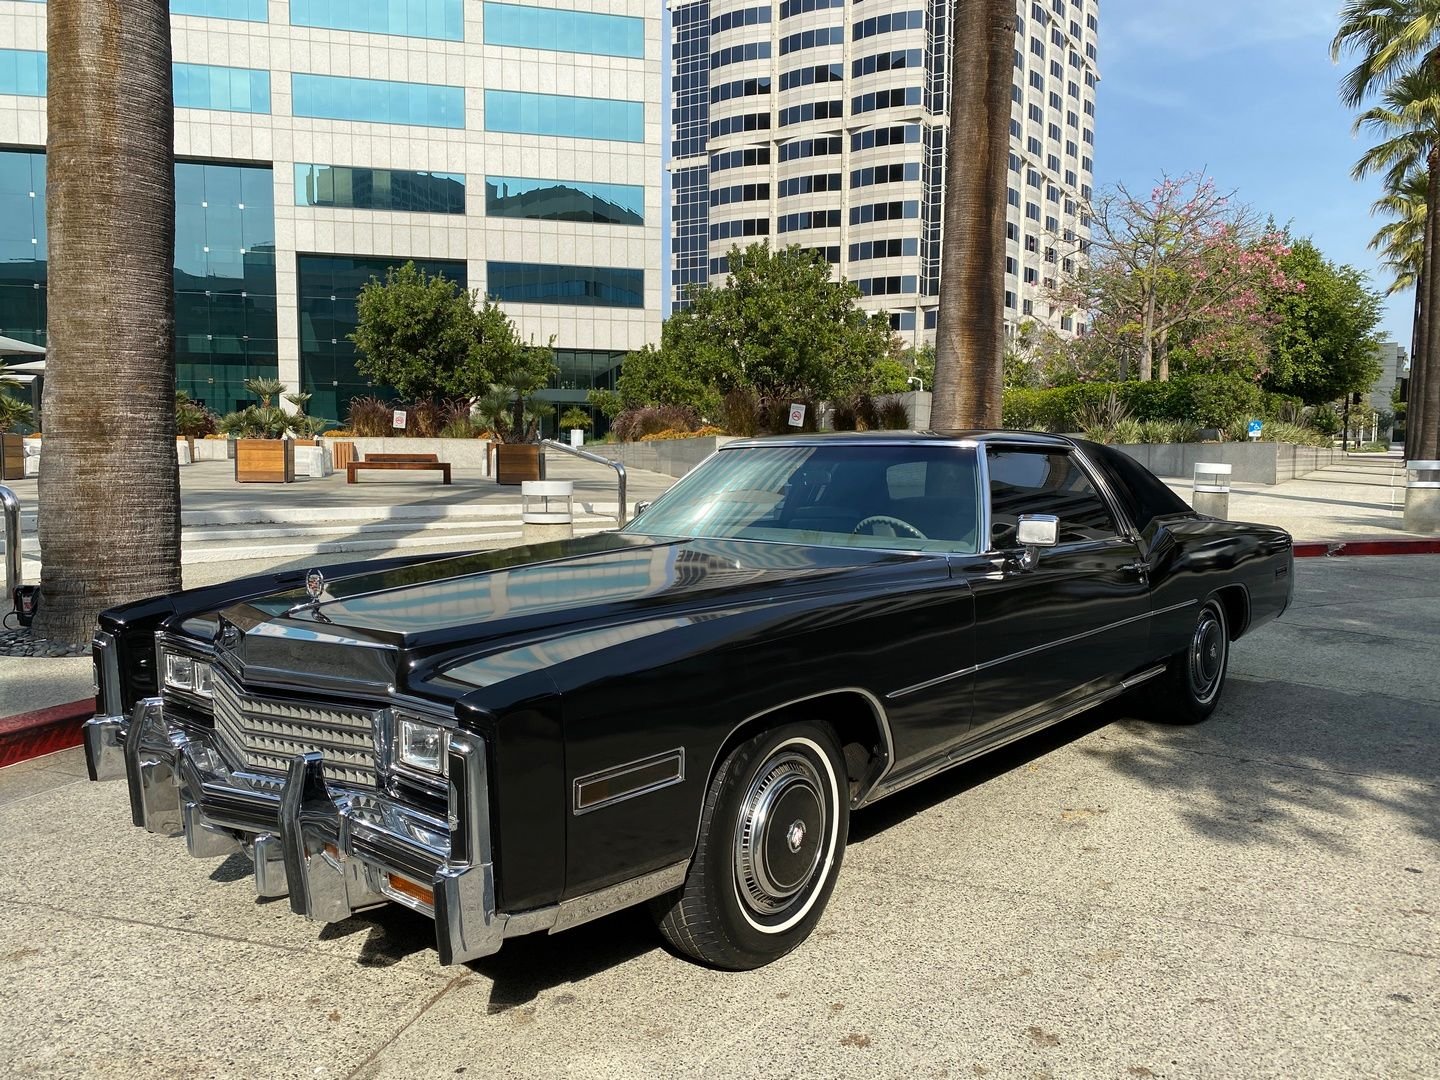 1978 Cadillac Eldorado | Vintage Car Collector